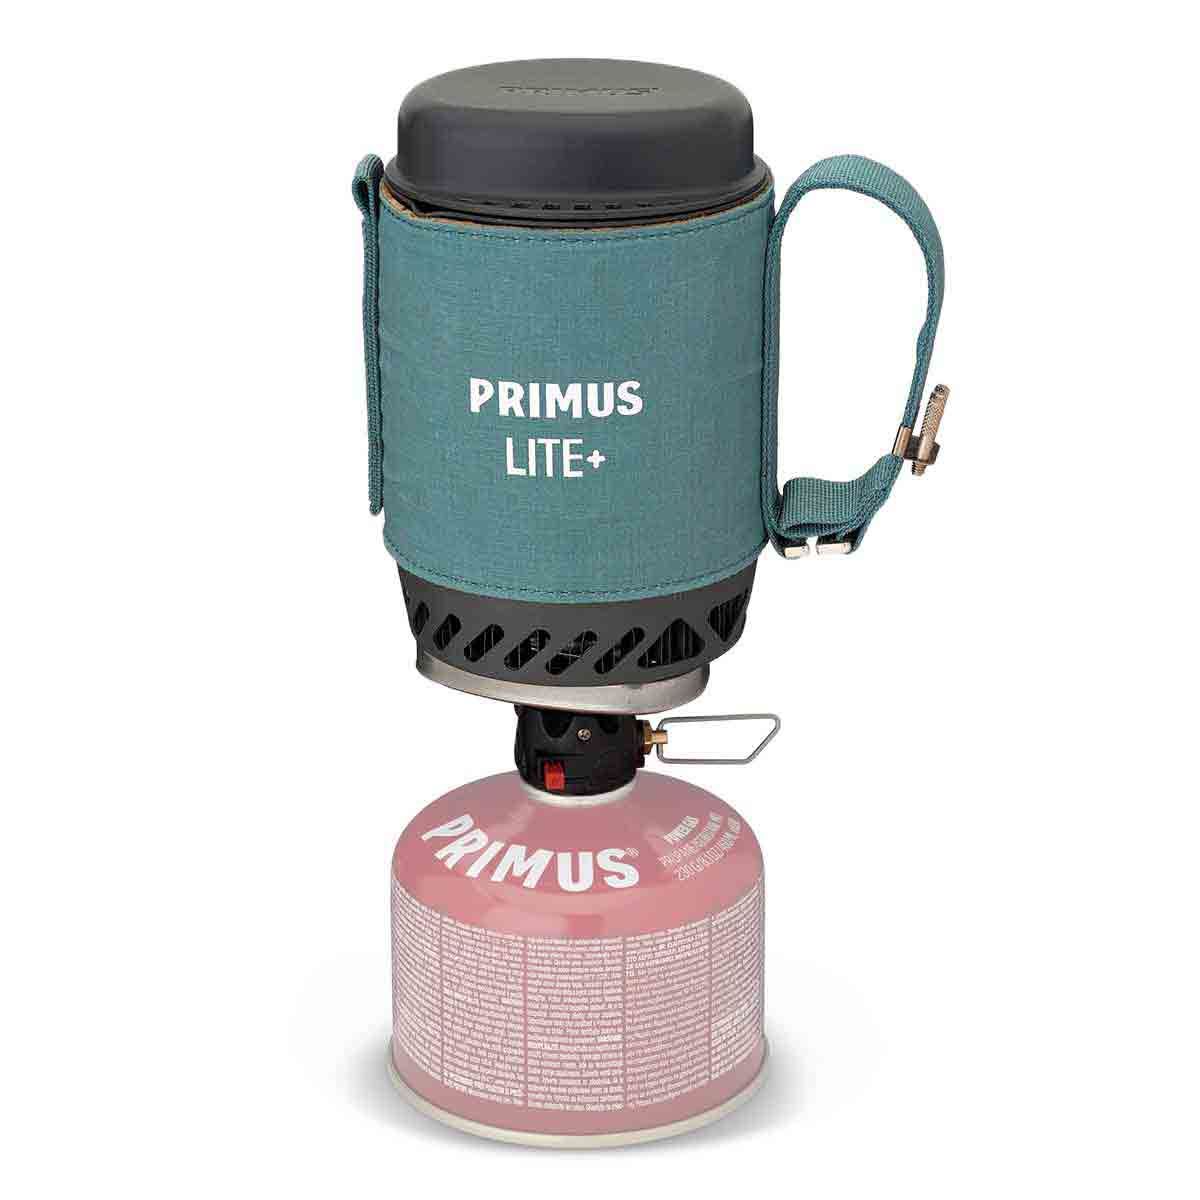 Primus lite+ stove réchaud à gaz vert